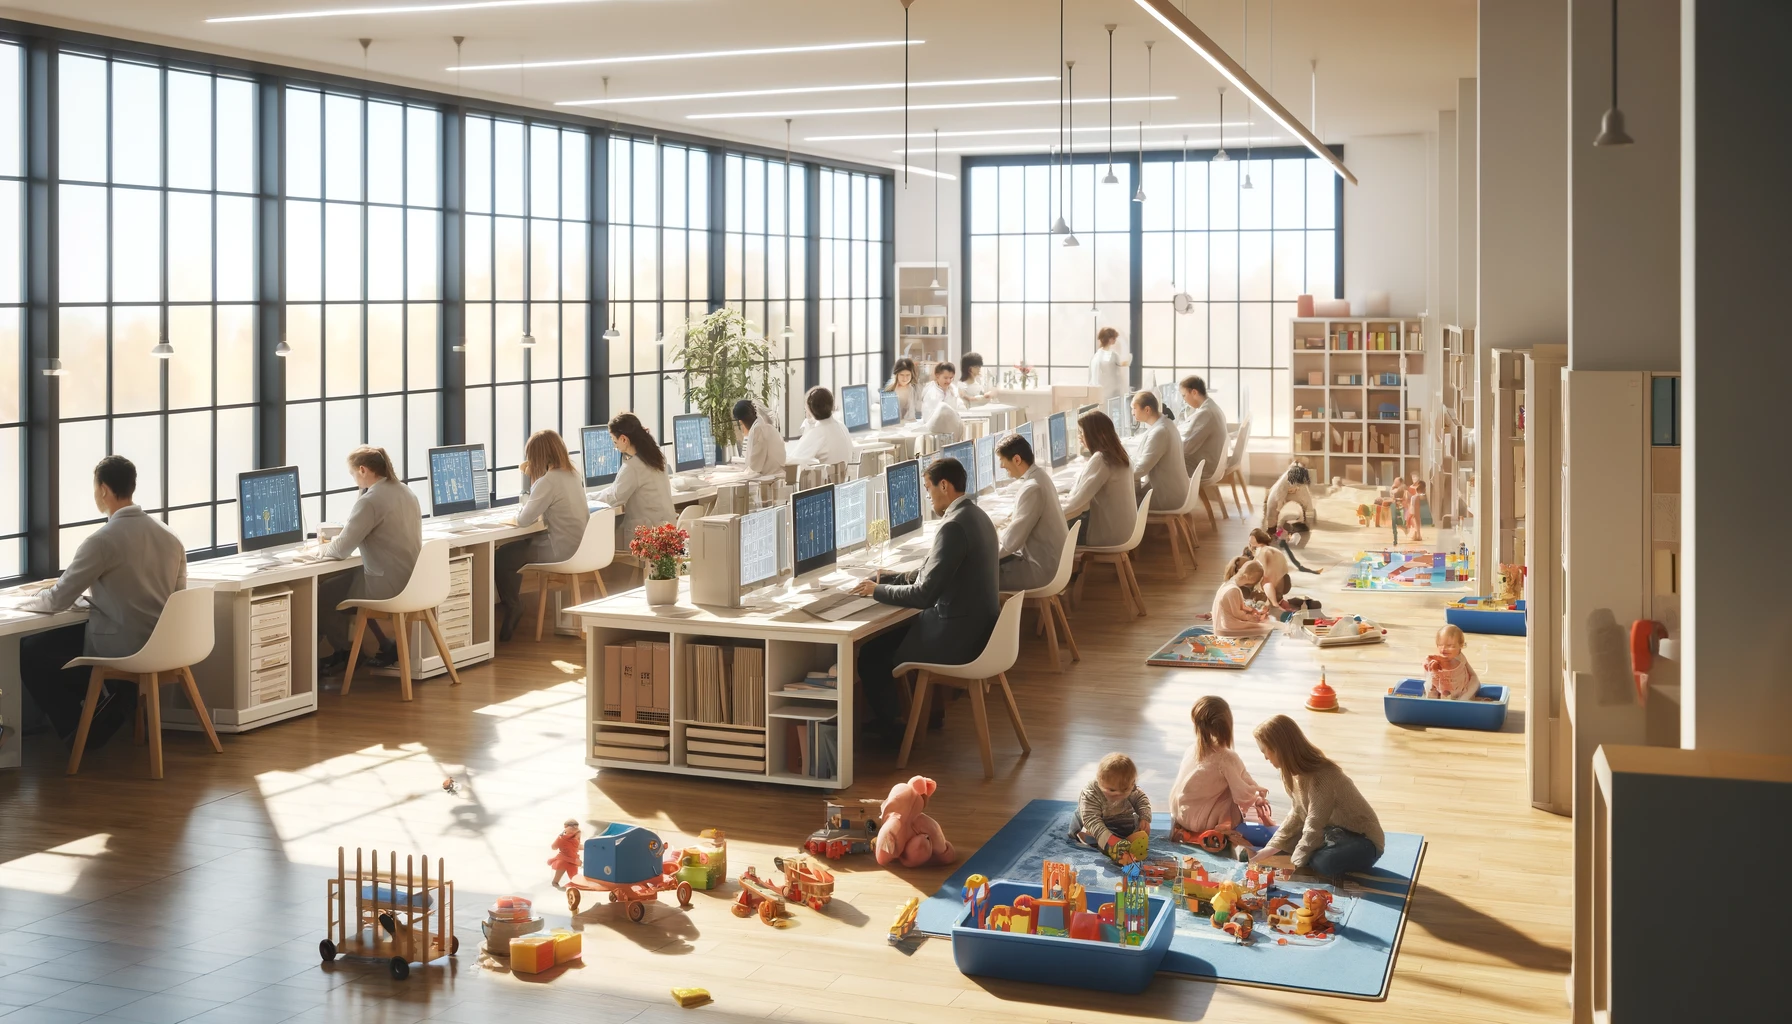 Przestronne, jasne biuro z dużymi oknami i strefą zabaw dla dzieci. Pracownicy przy biurkach z komputerami, a dzieci bawią się w przestrzeni obok.